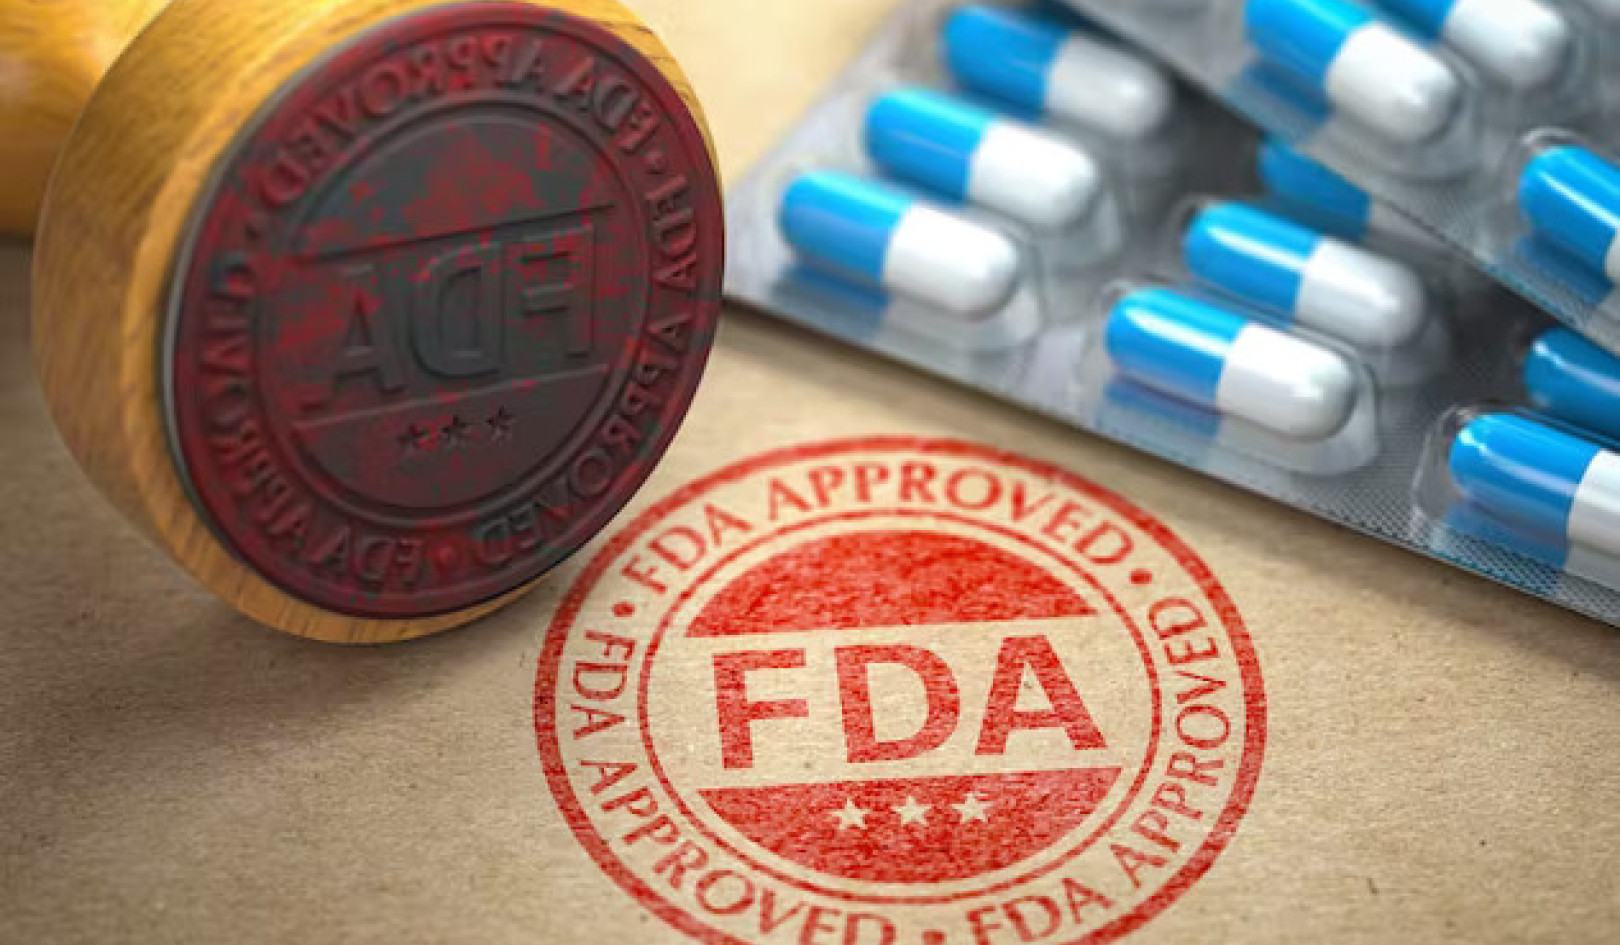 Ikke la deg lure: Den virkelige betydningen av "patentert" og "FDA-godkjent" i annonser